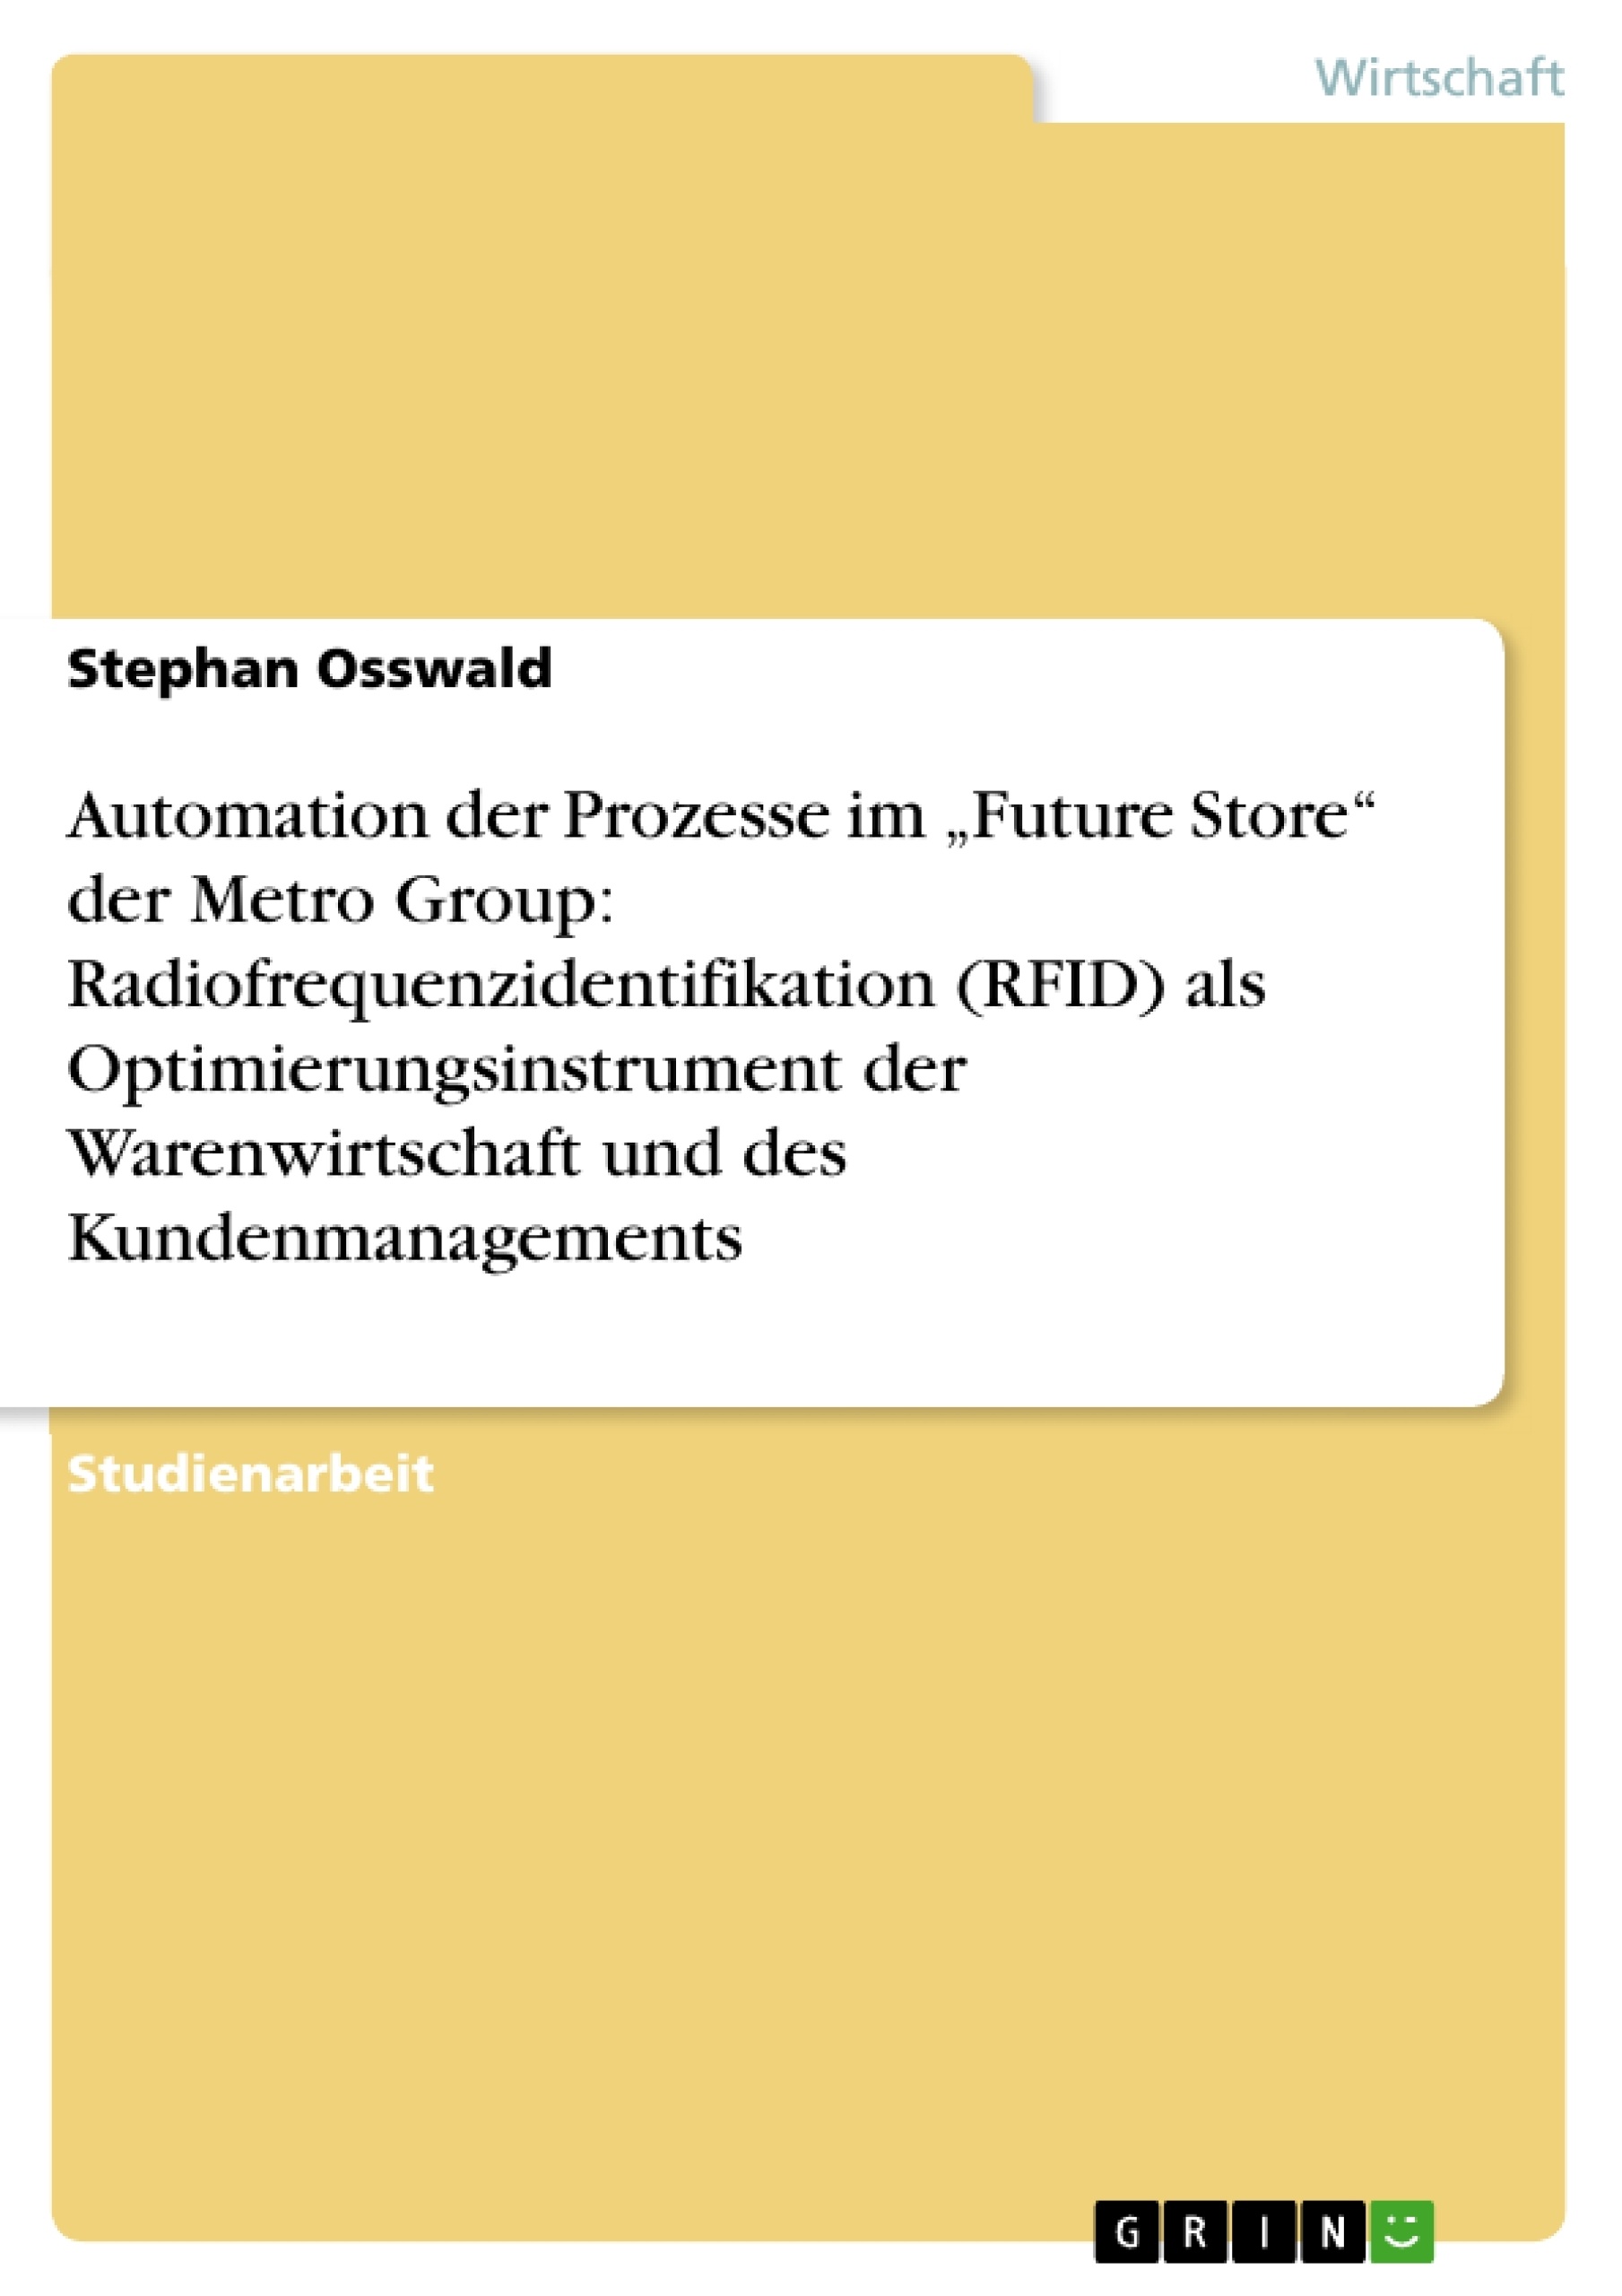 Title: Automation der Prozesse im „Future Store“ der Metro Group: Radiofrequenzidentifikation (RFID) als Optimierungsinstrument der Warenwirtschaft und des Kundenmanagements